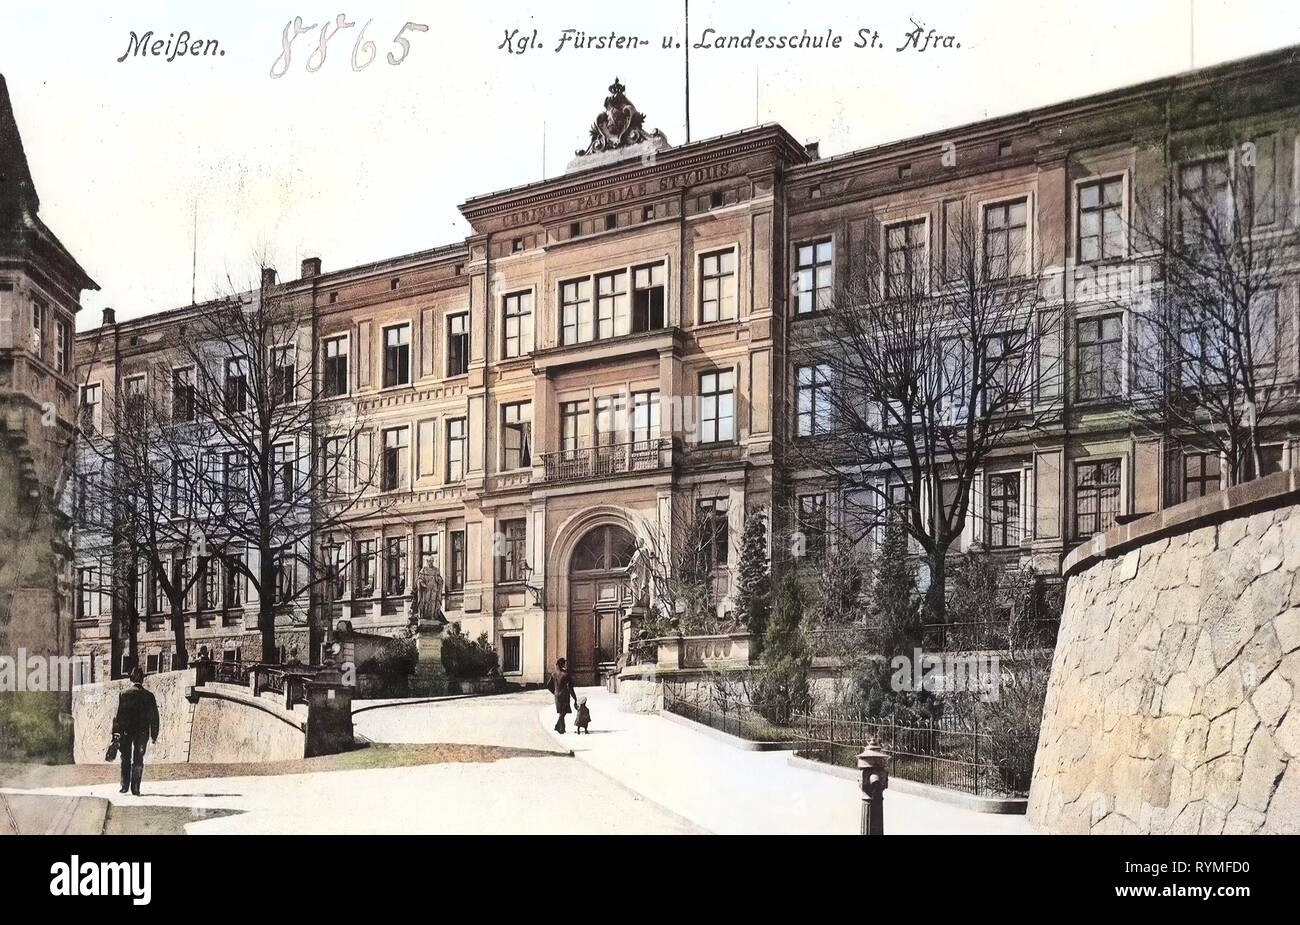 Saxon Landesgymnasium Sankt Afra, 1907, Meißen, Fürsten & Landesschule St. l'AFRA, Allemagne Banque D'Images